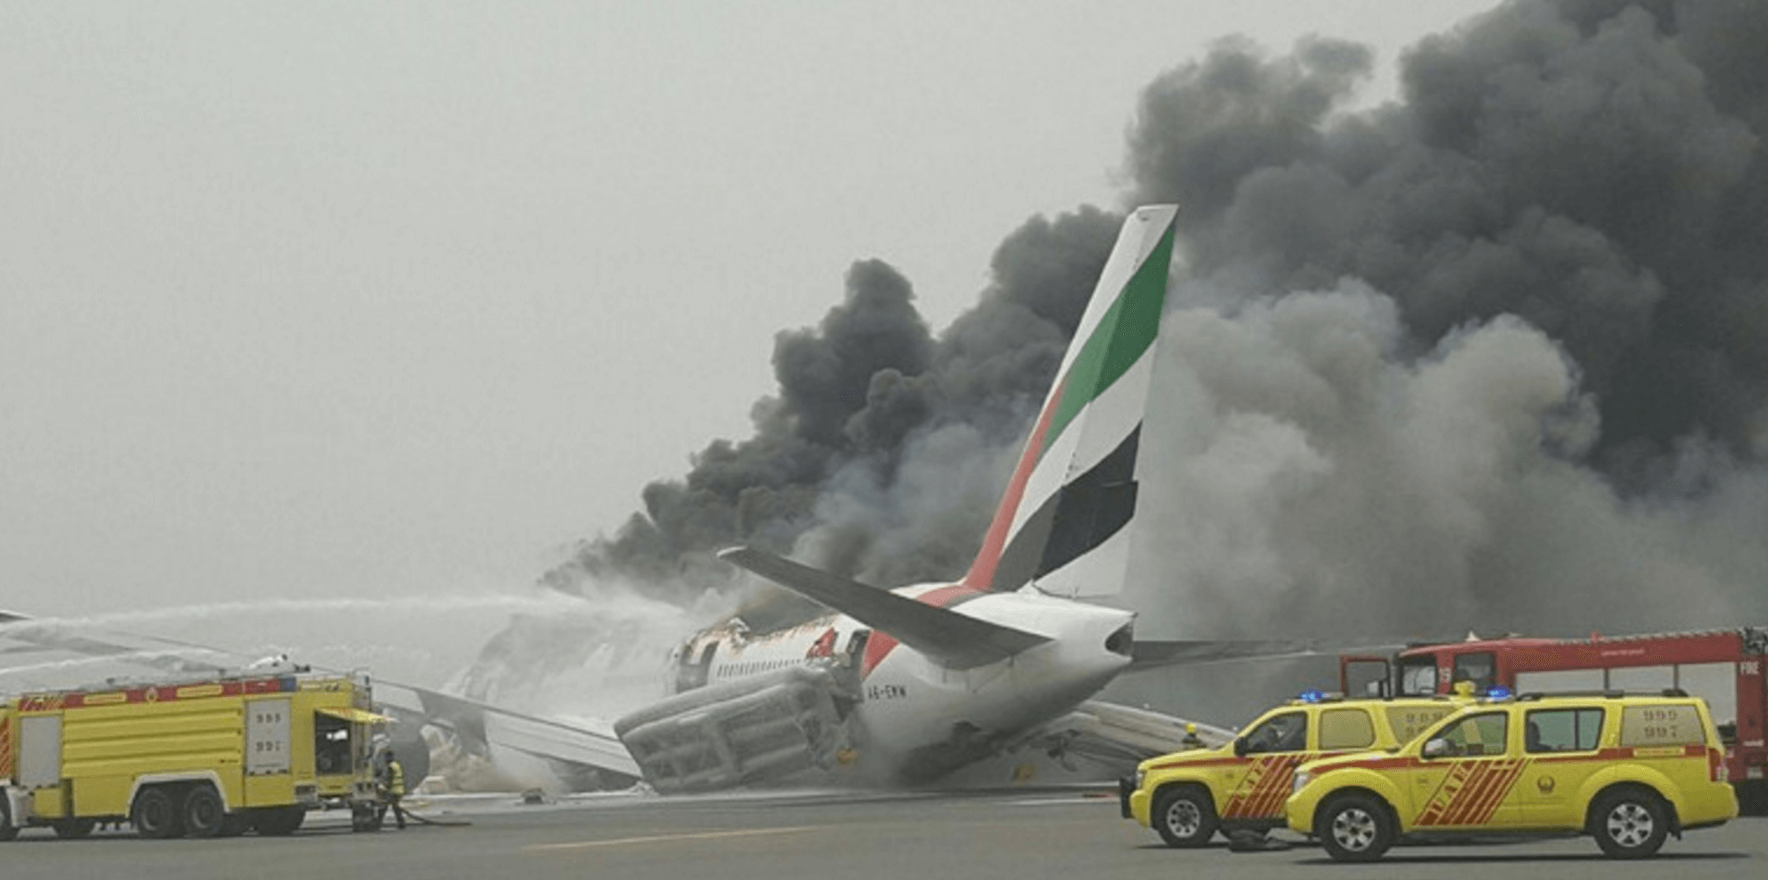 Emirates PLANE Explodes After Crash Landing in Dubai | Secret Flying